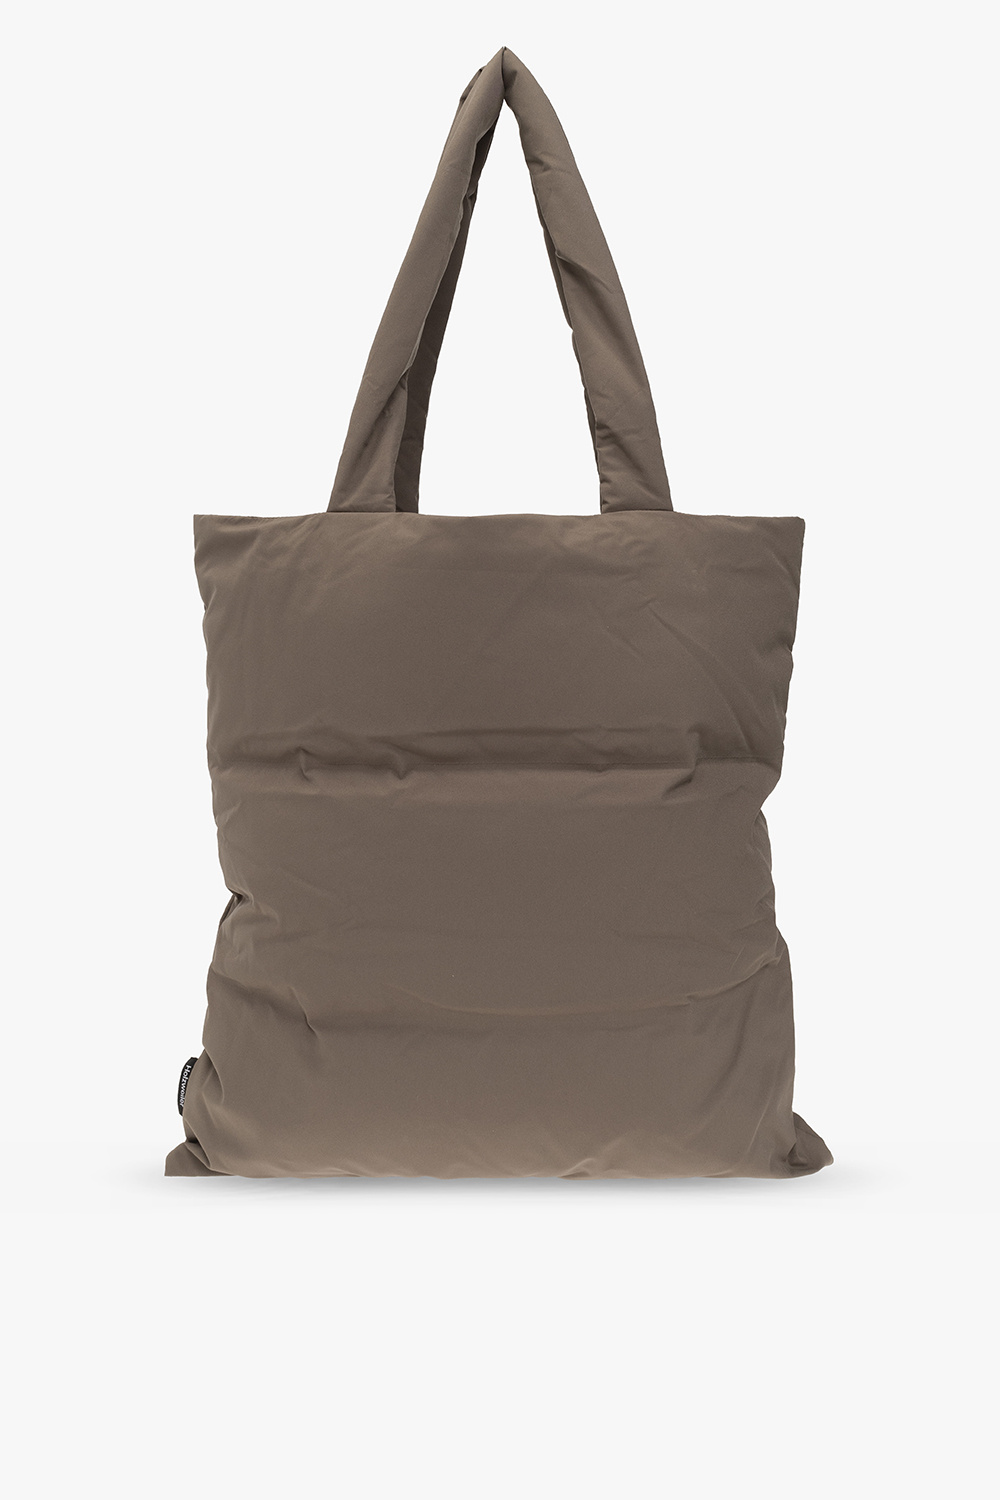 Zac Posen, Bags, Zac Posen Belay Core Leather Bucket Bag